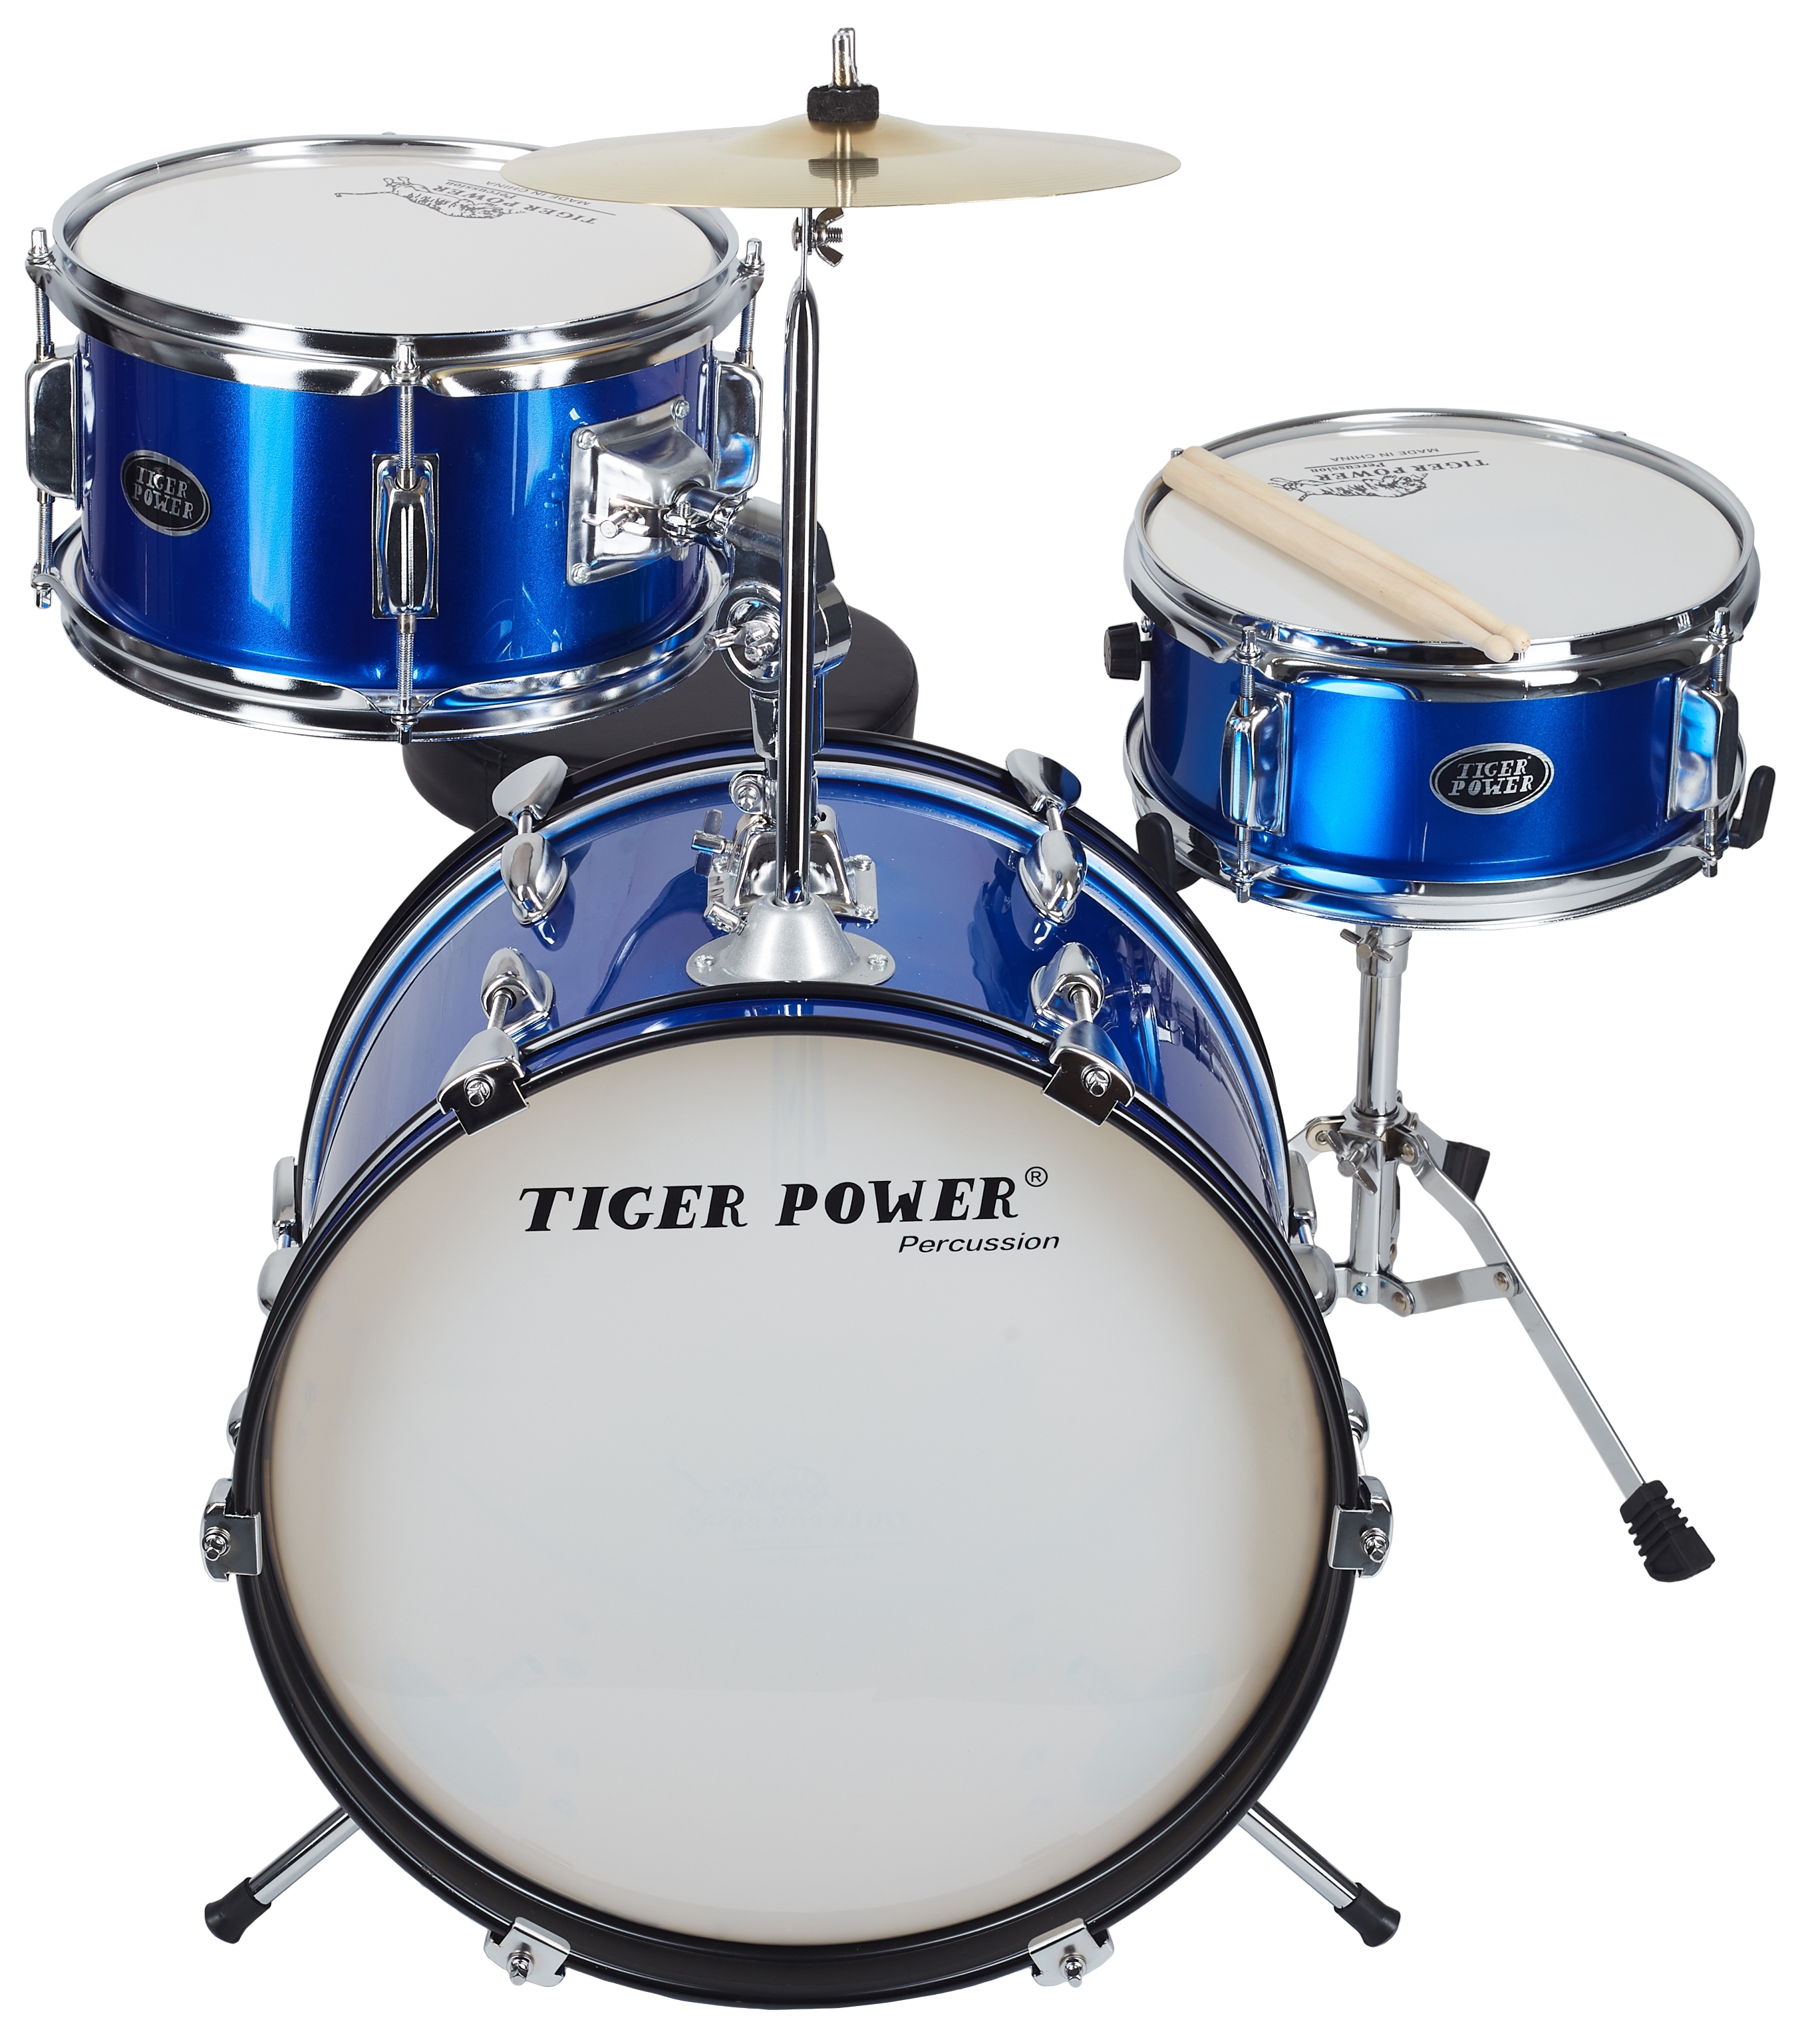 TIGER POWER TCCJR30 Blue